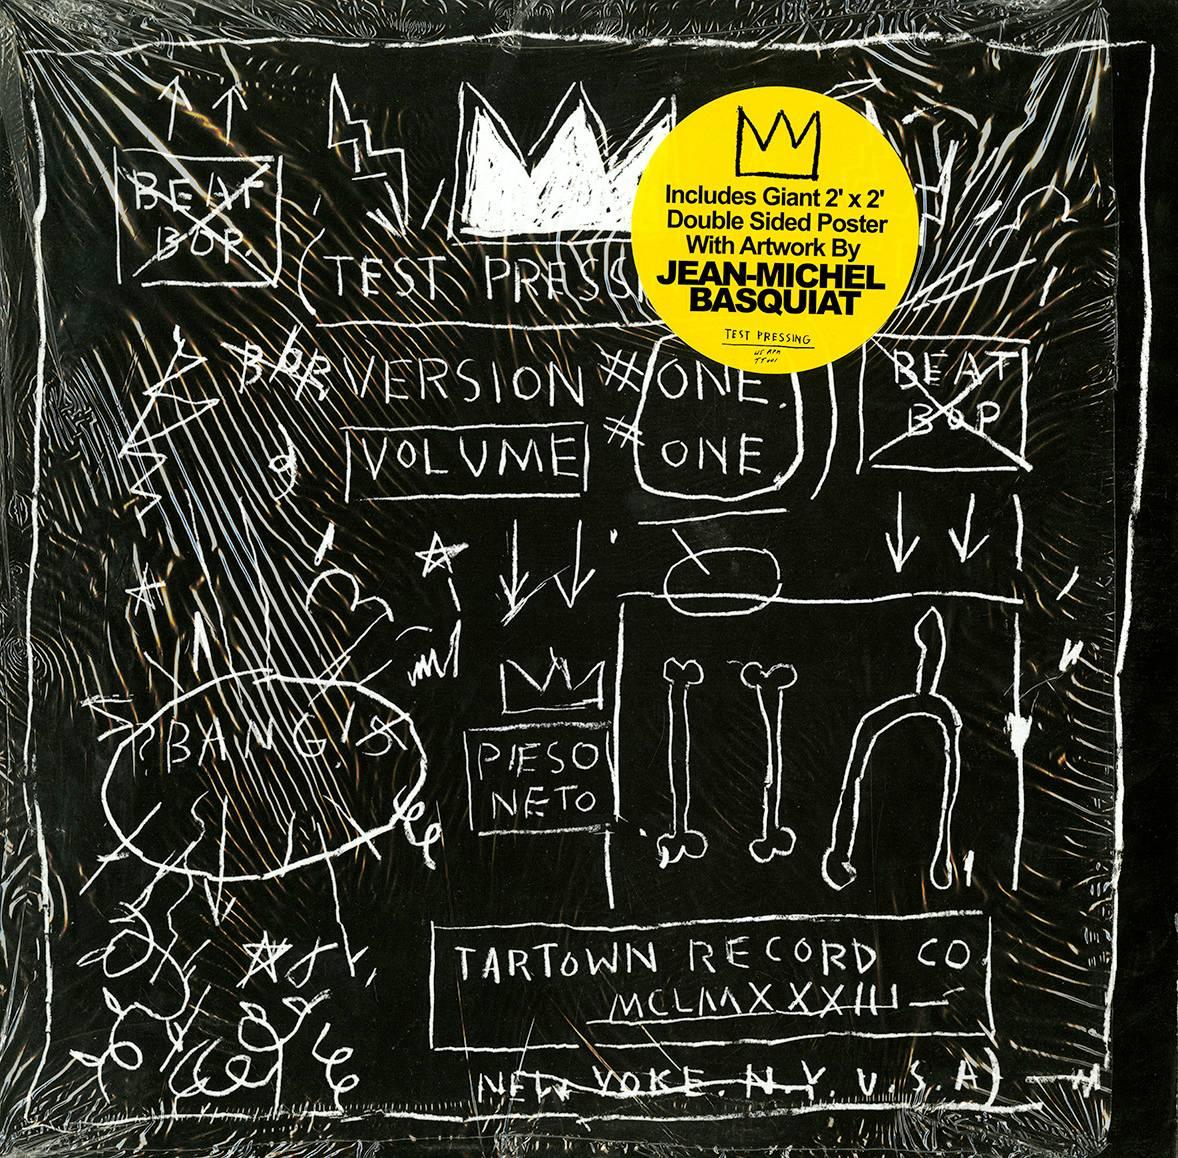 L'art d'un disque et d'une affiche de Basquiat Beat Bop (album art Basquiat)  - Mixed Media Art de after Jean-Michel Basquiat